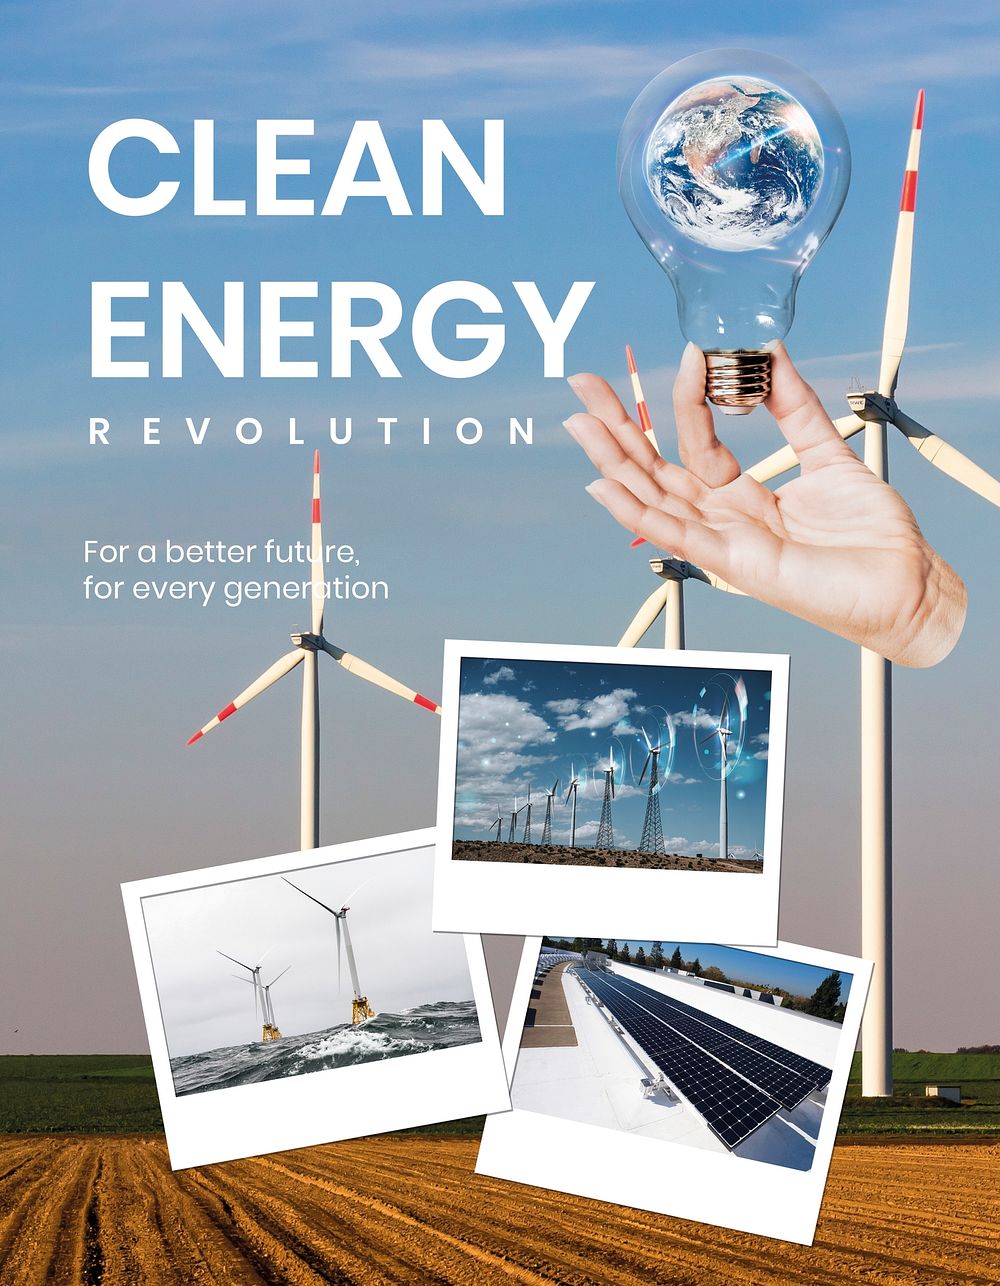 Clean energy flyer template, editable text psd